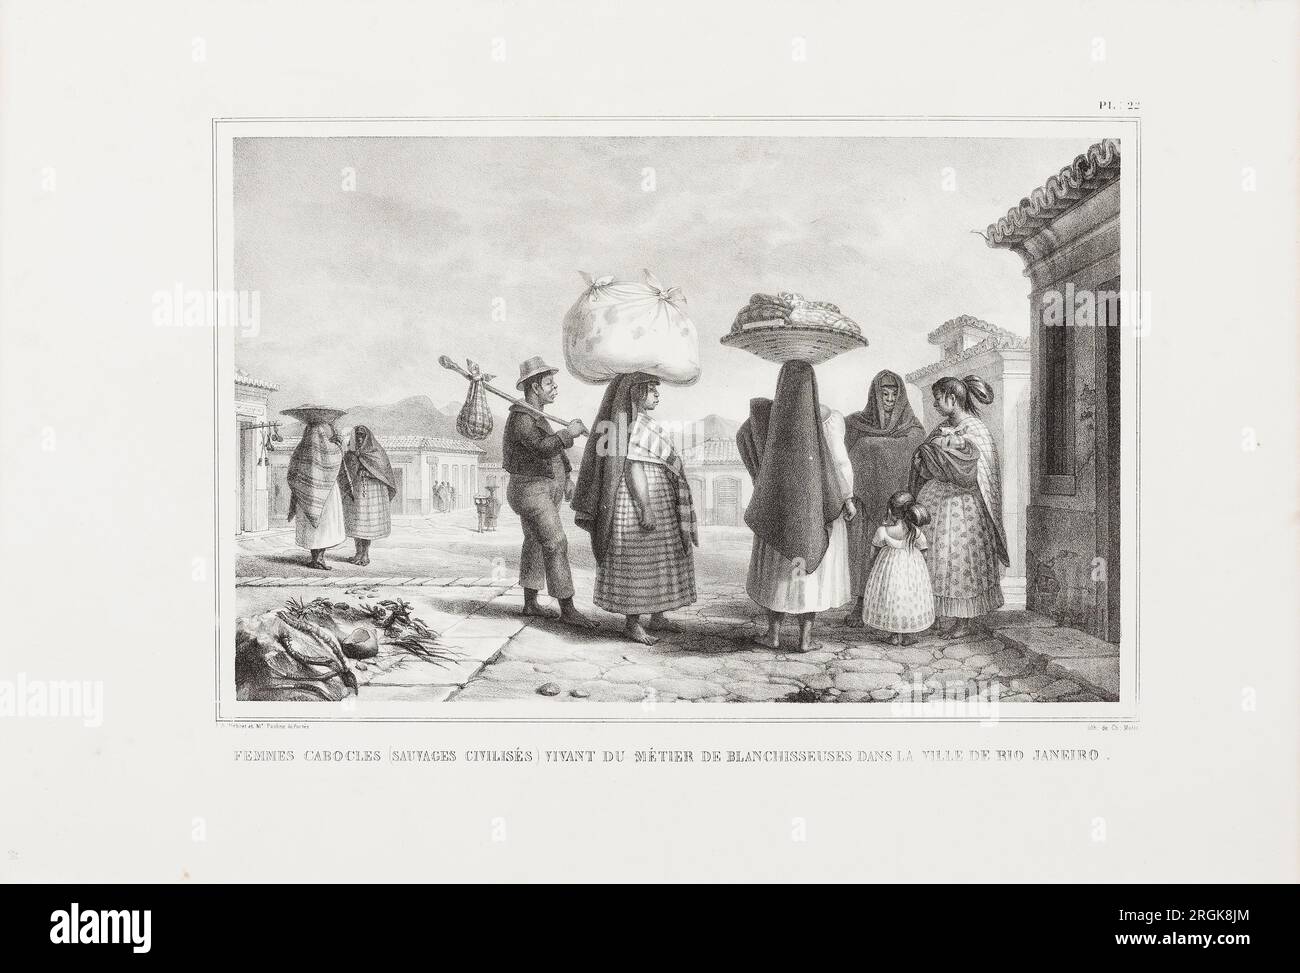 FEMMES Cabocles (Sauvages civilisés) vivant du metier de blanchisseuses dans la ville de Rio Janeiro 1834 von Jean-Baptiste Debret Stockfoto